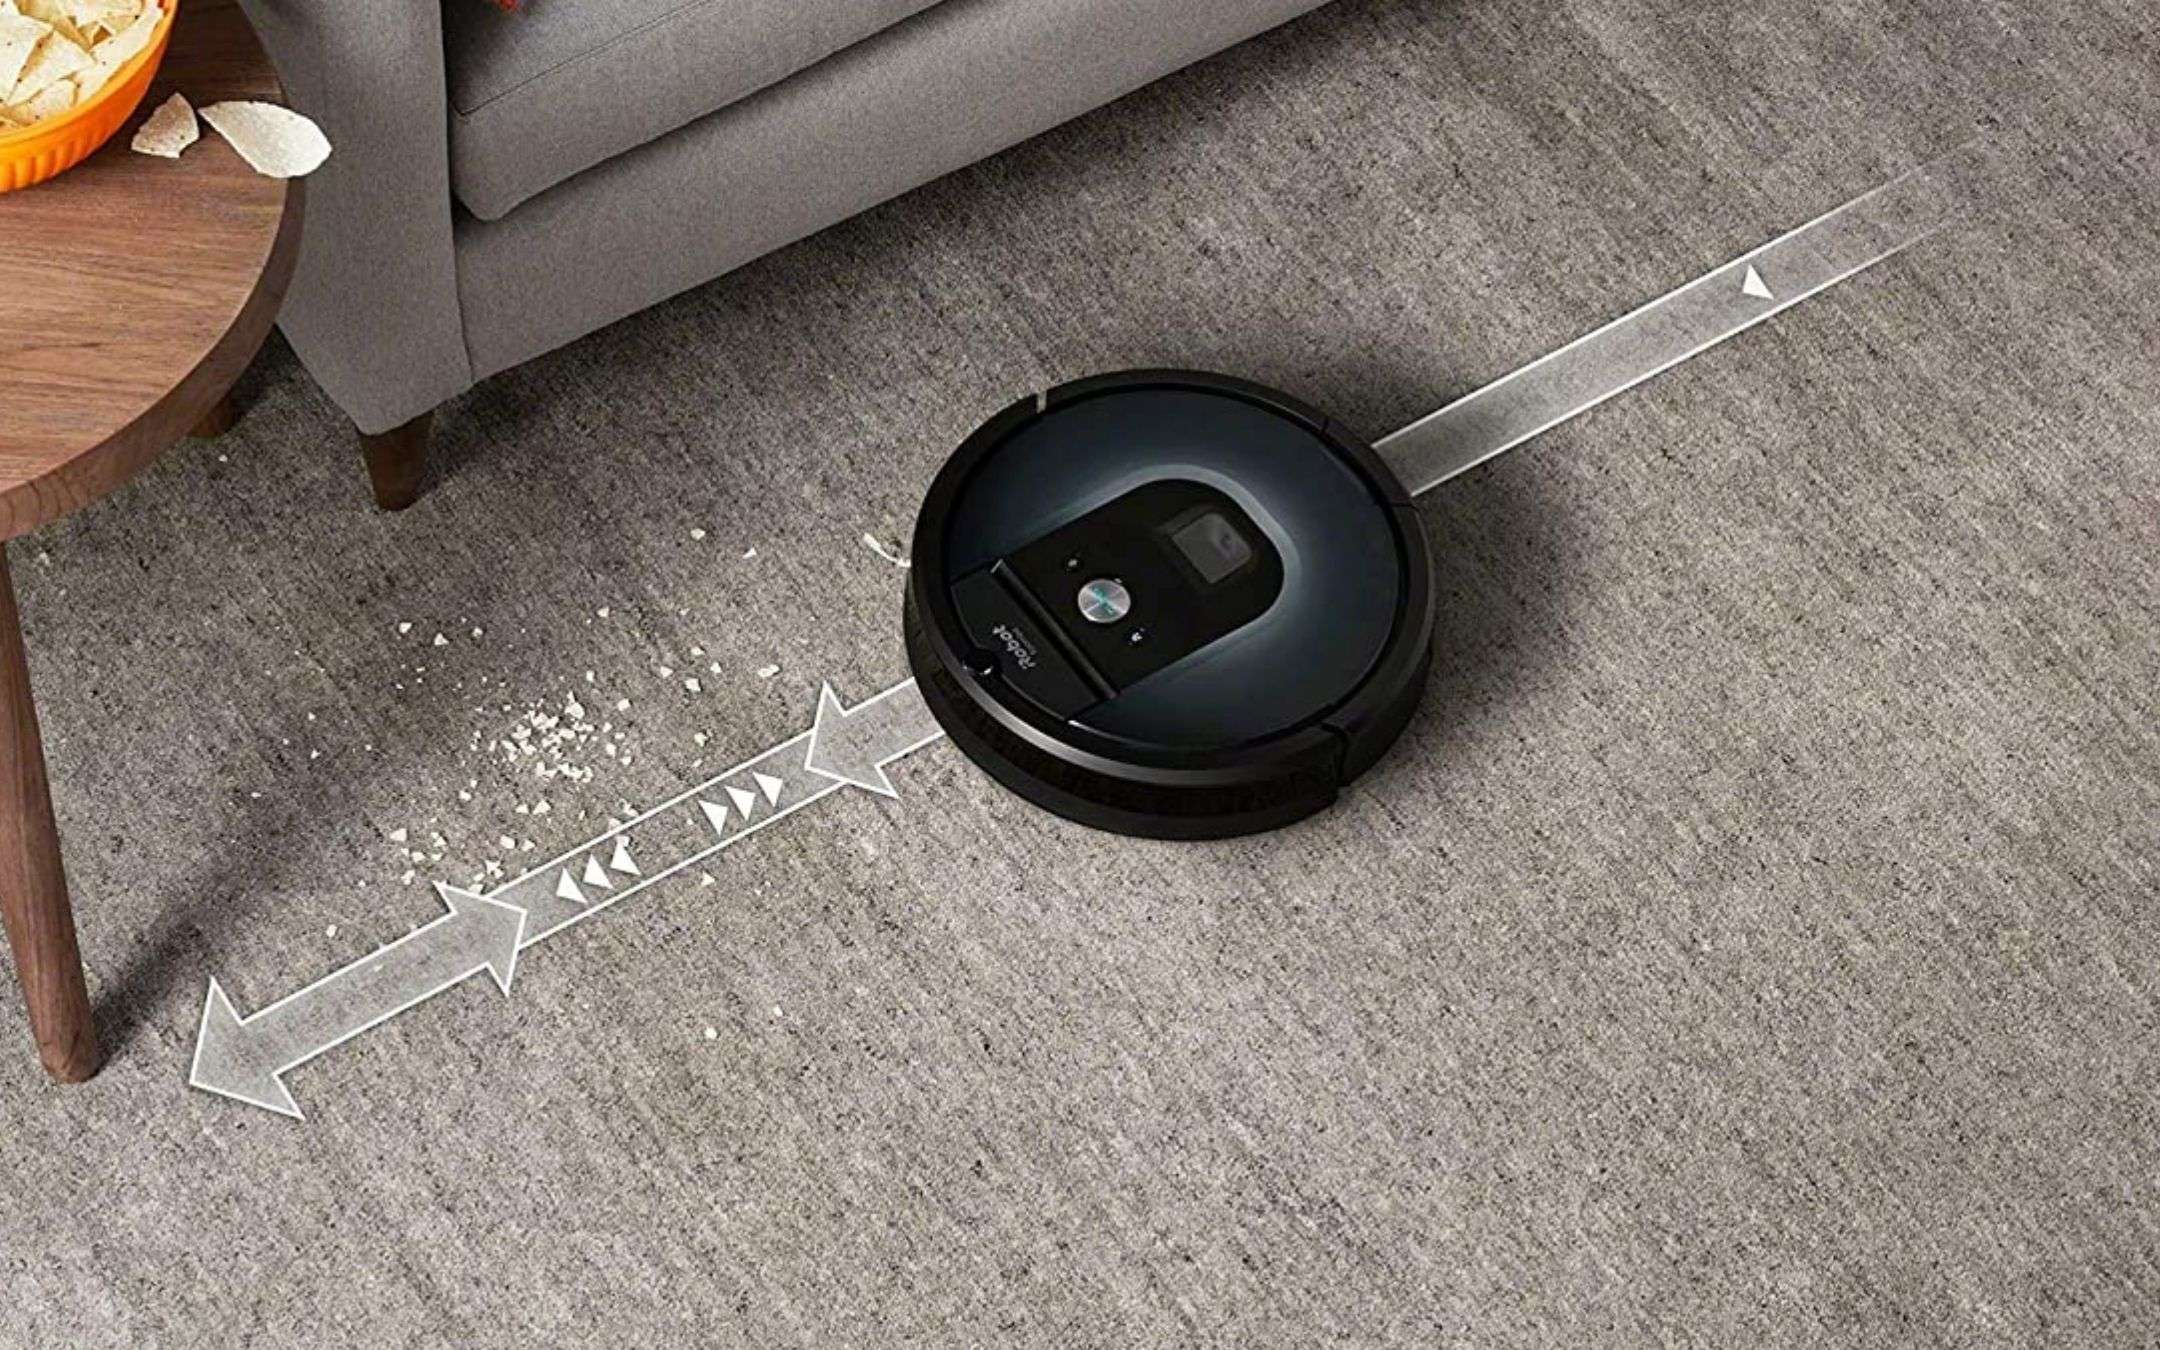 Roomba 960: prezzo minimo storico su Amazon, sconto 420€